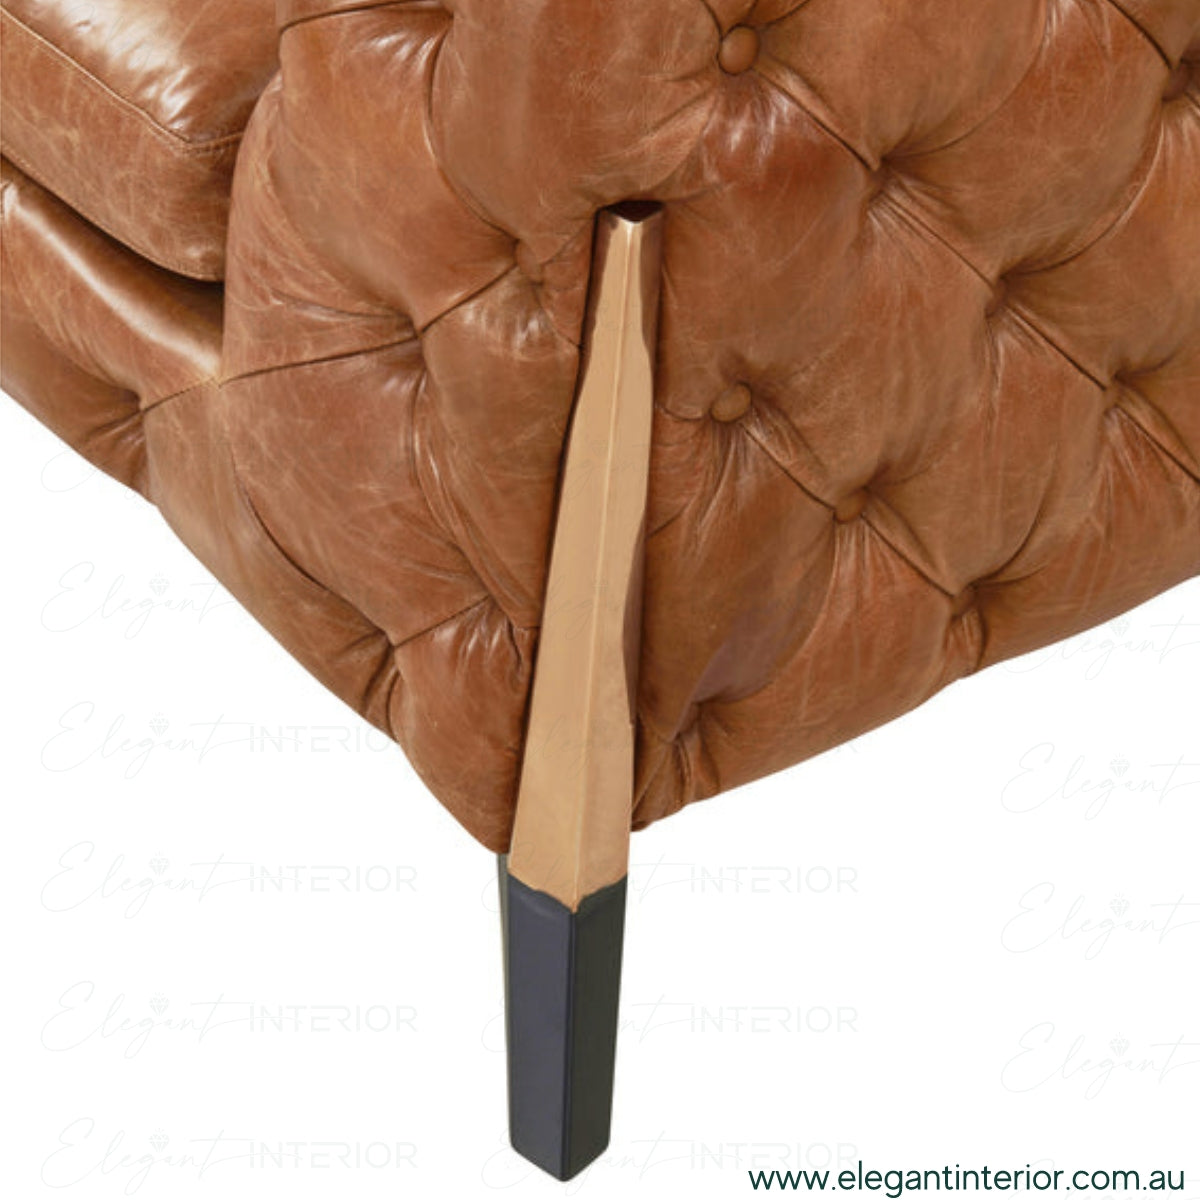 American-Leather-in-Australia-Elegant-Interior-Australia-8